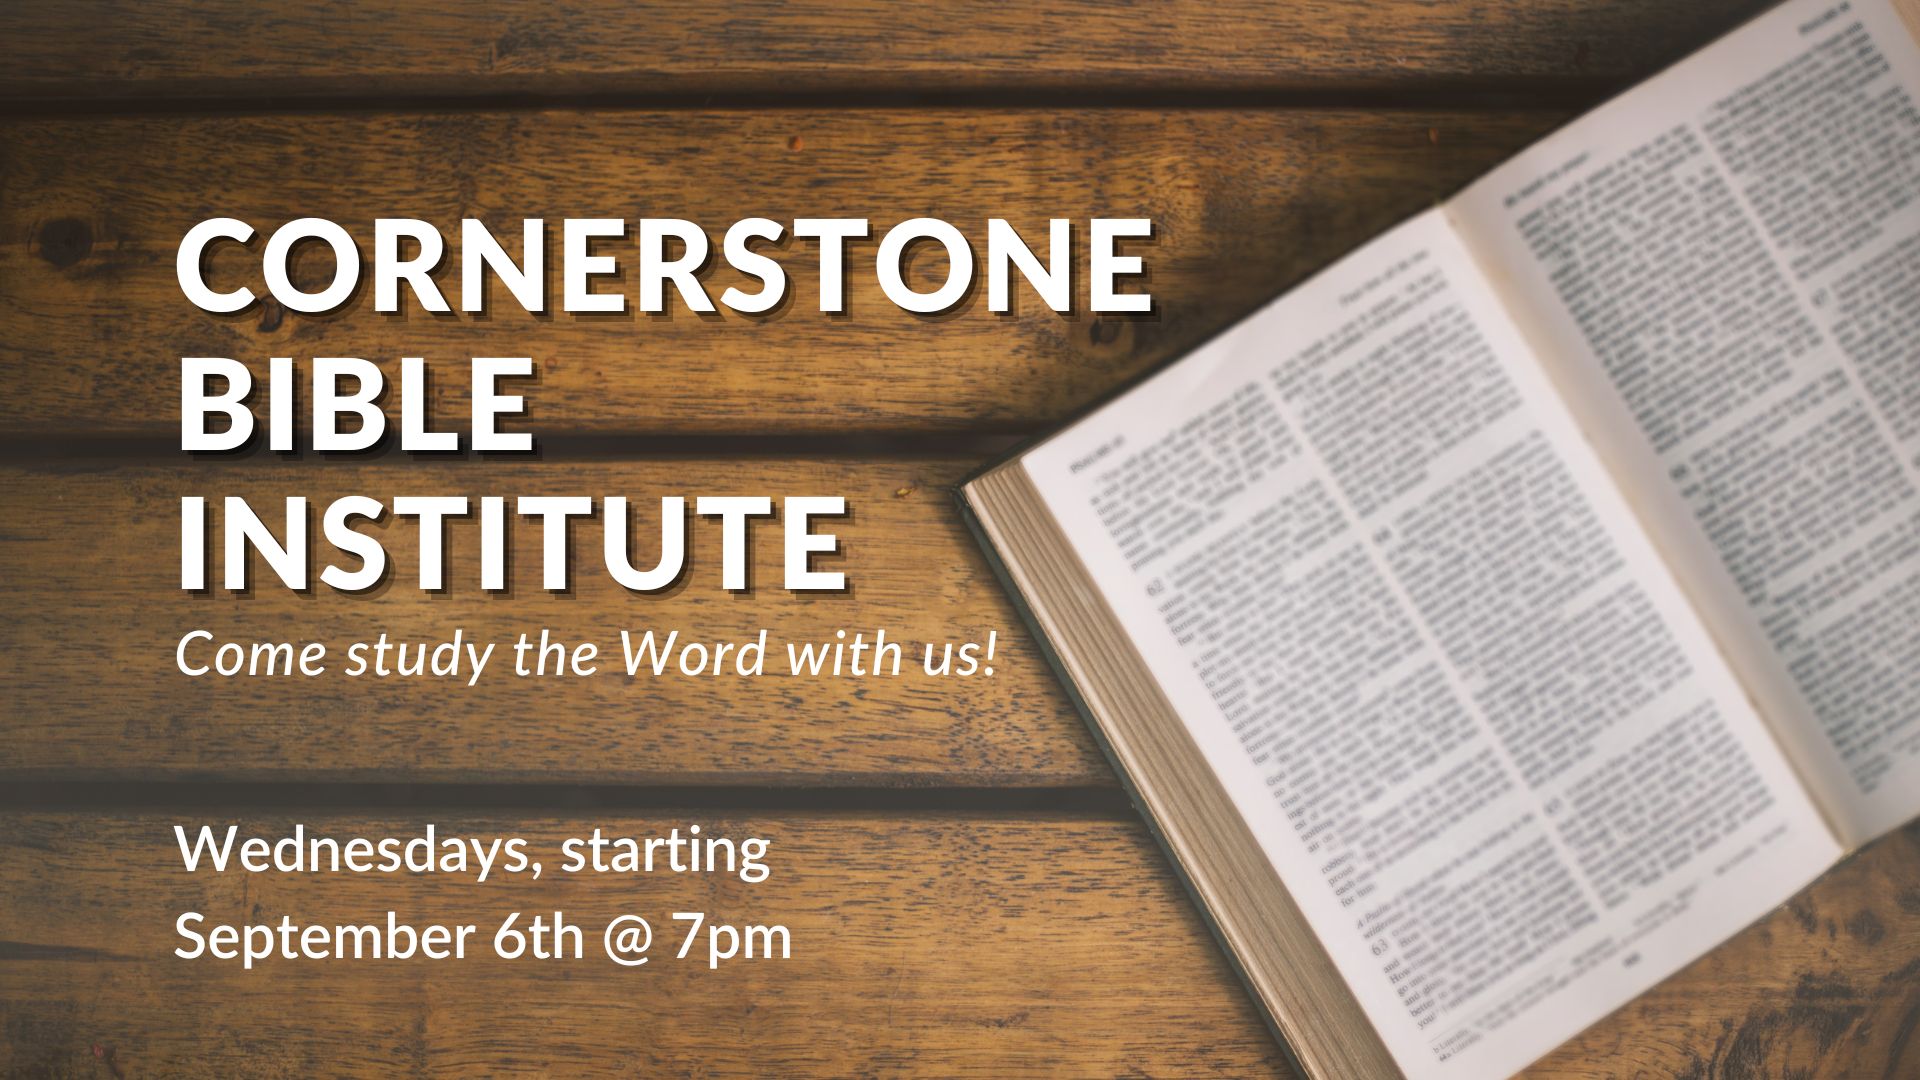 Cornerstone Bible Institute